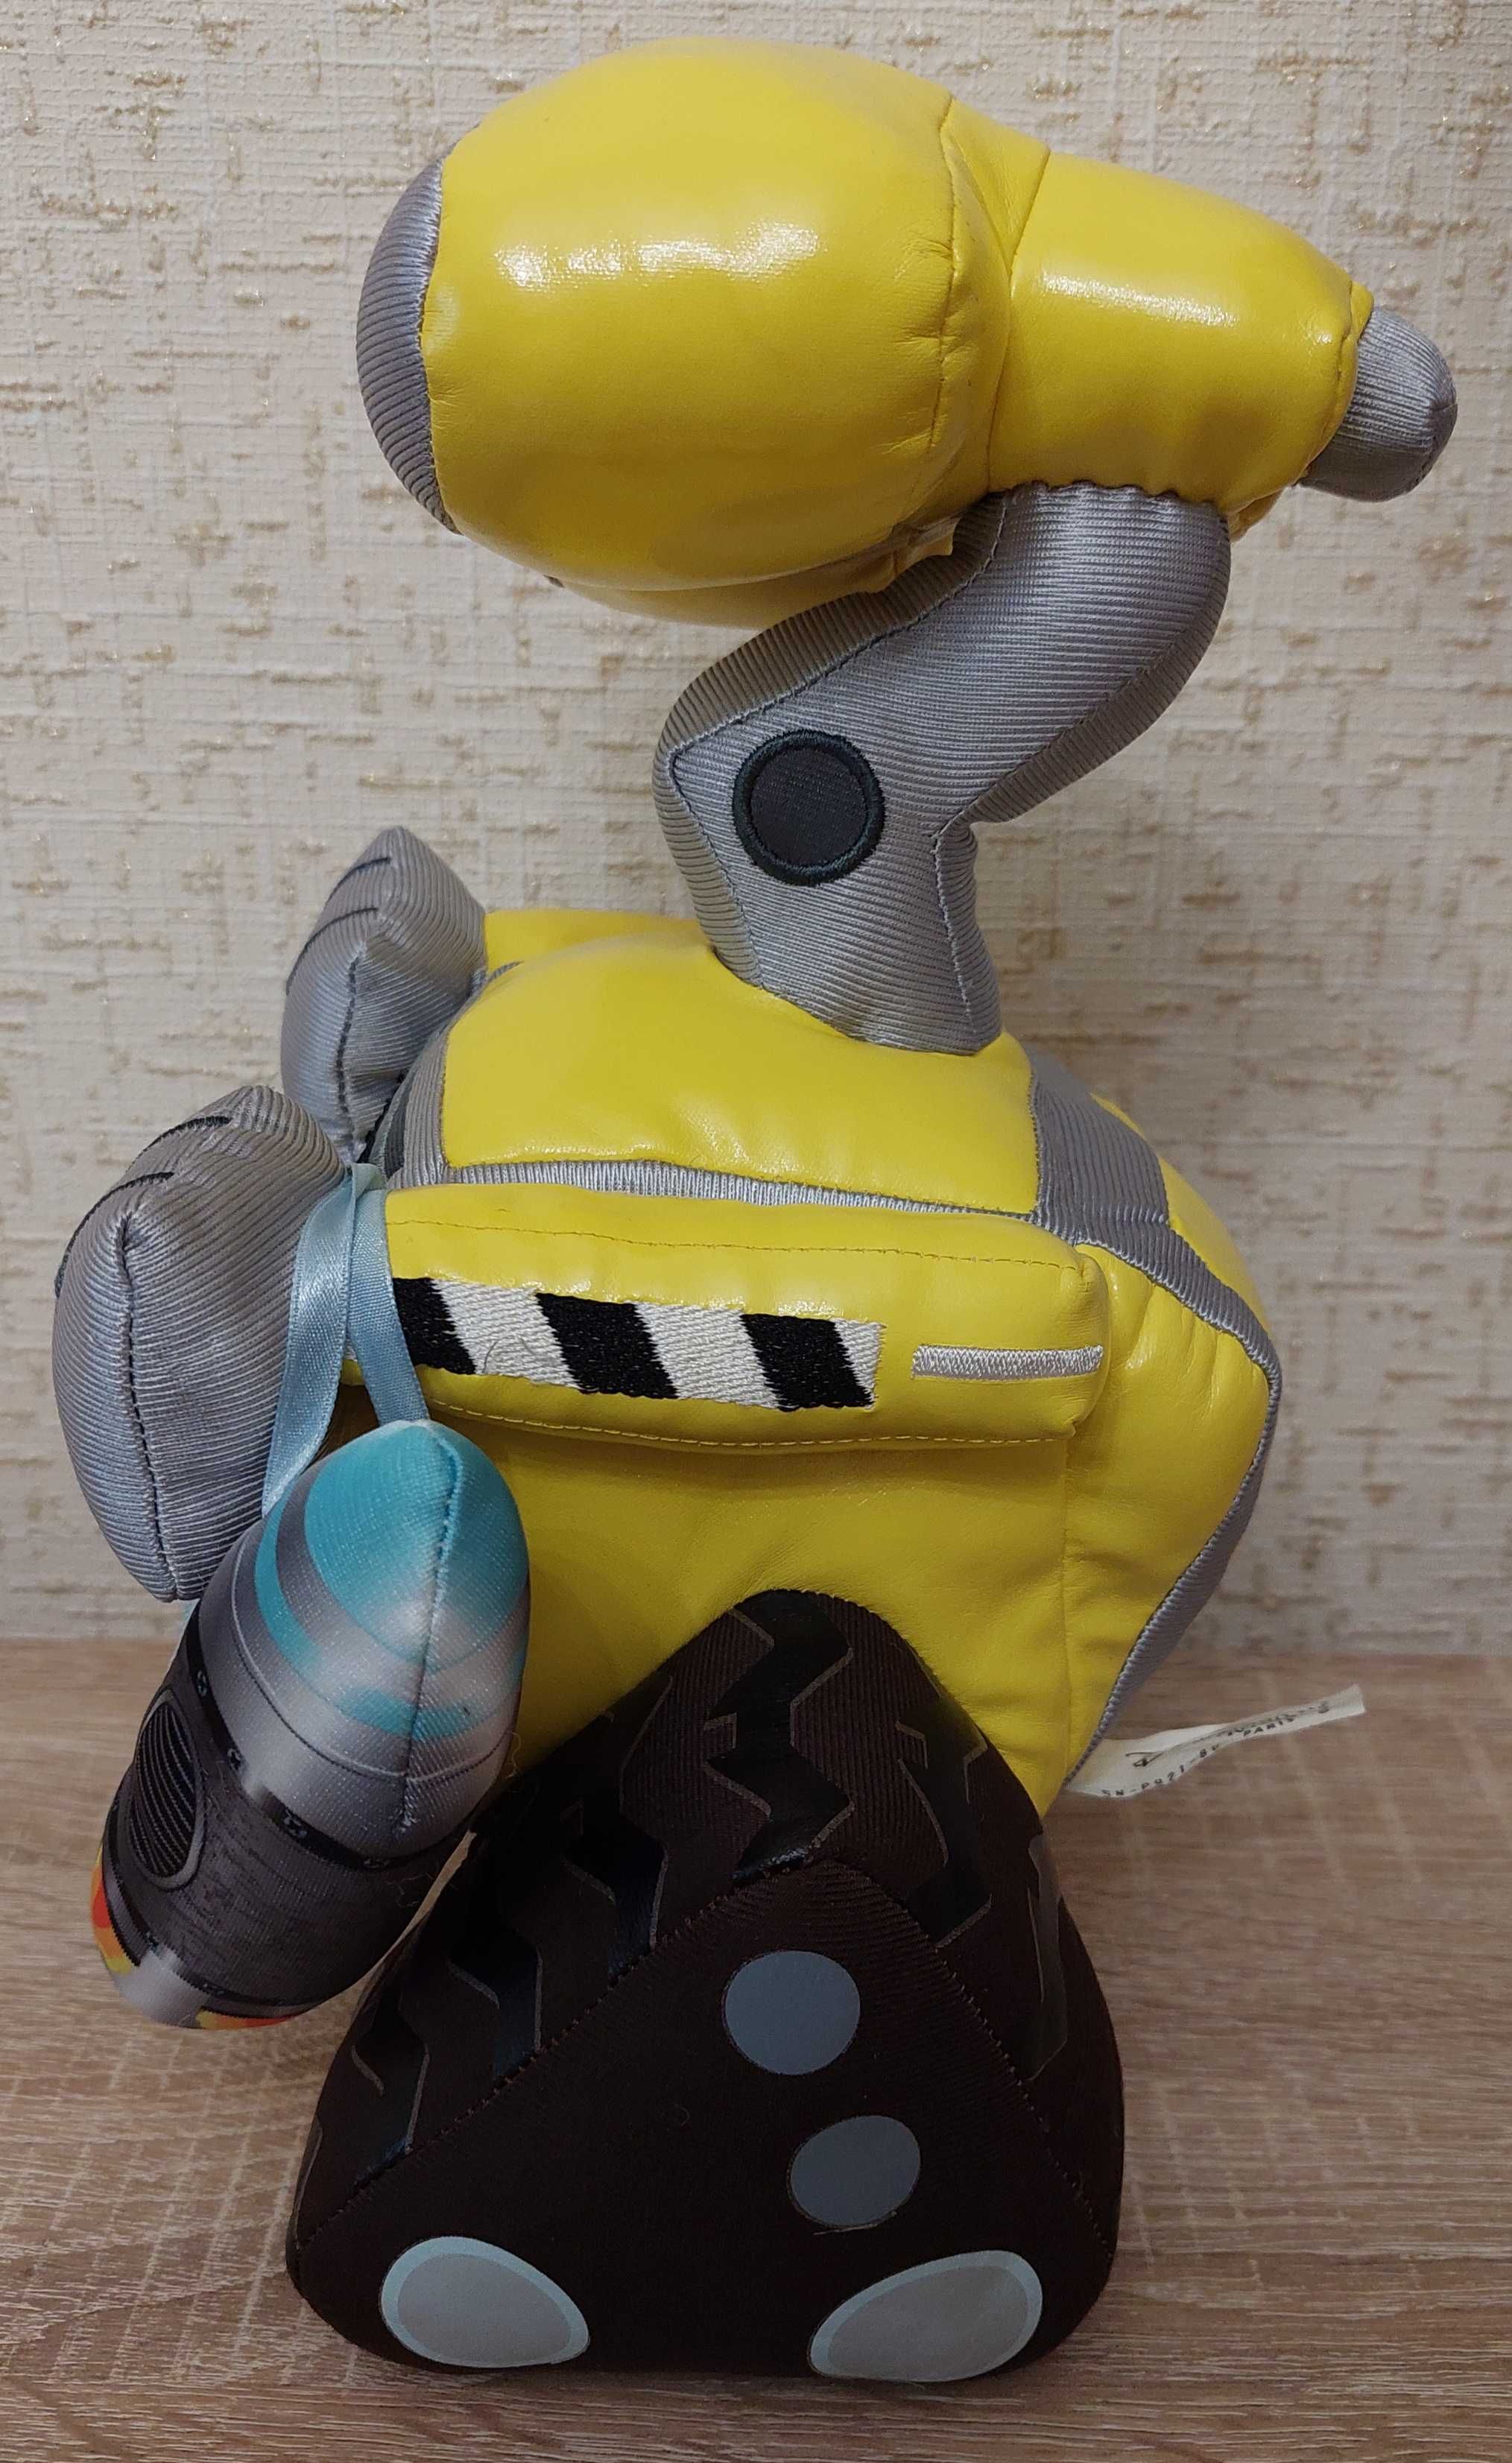 Мягкая игрушка робот ВАЛЛ-И, WALL-E DisneyLAND RESORT Paris, Вьетнам